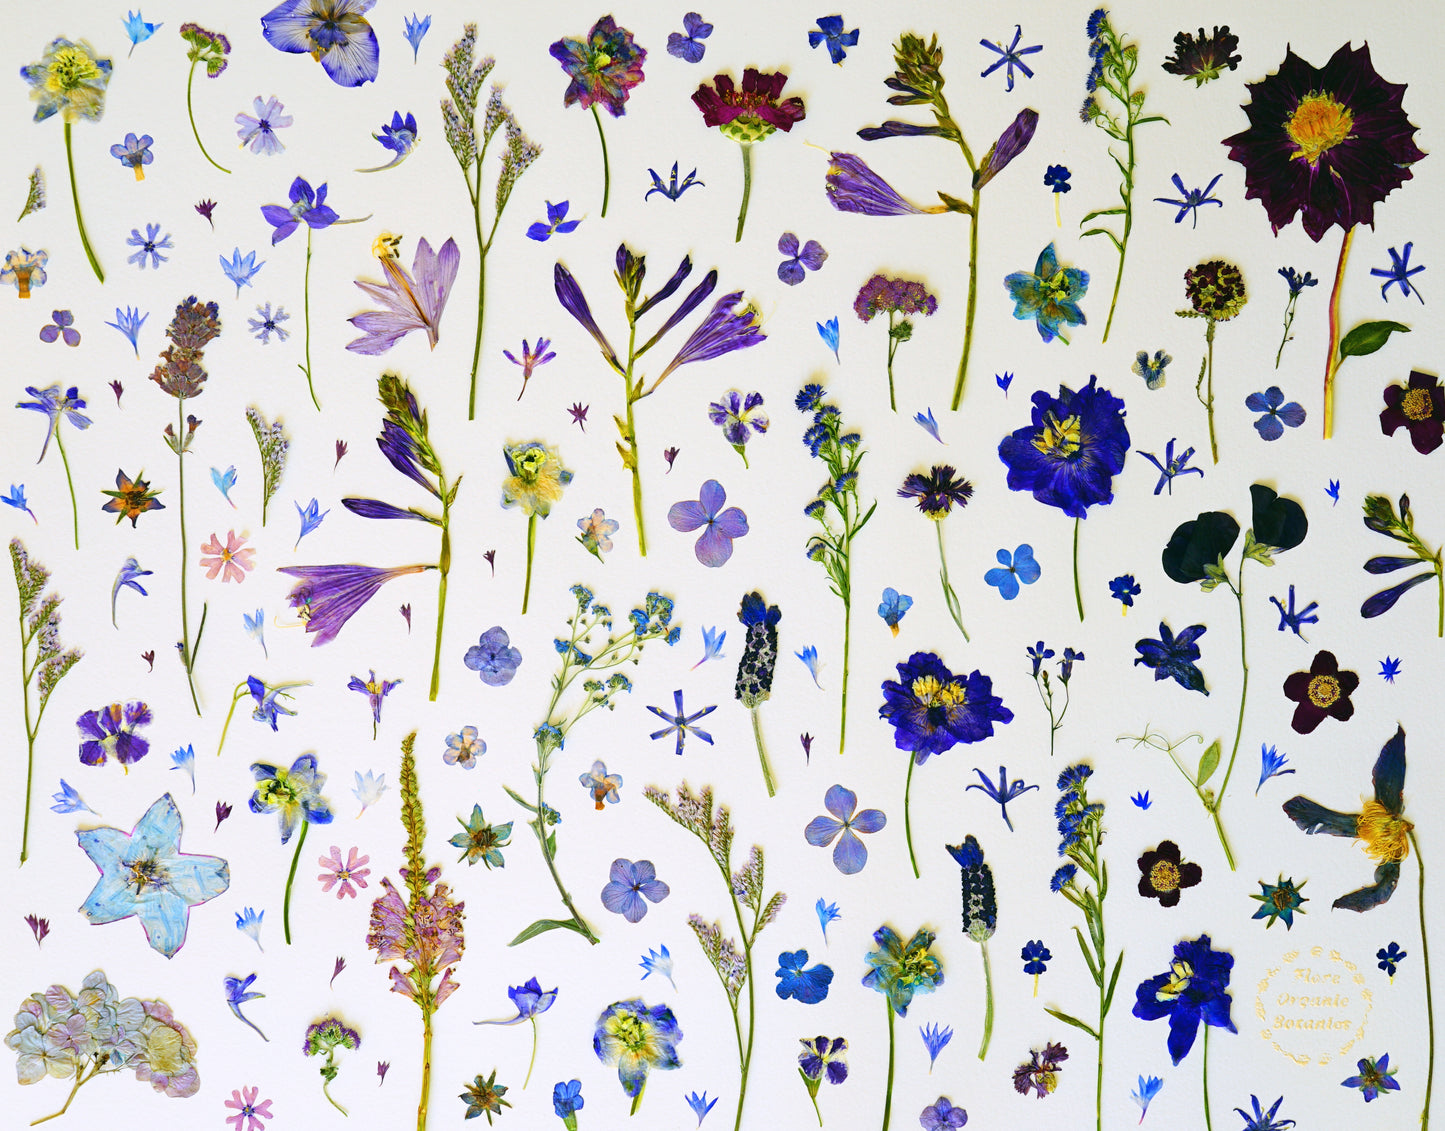 "La Vie en Bleu" Botanical Art Collage